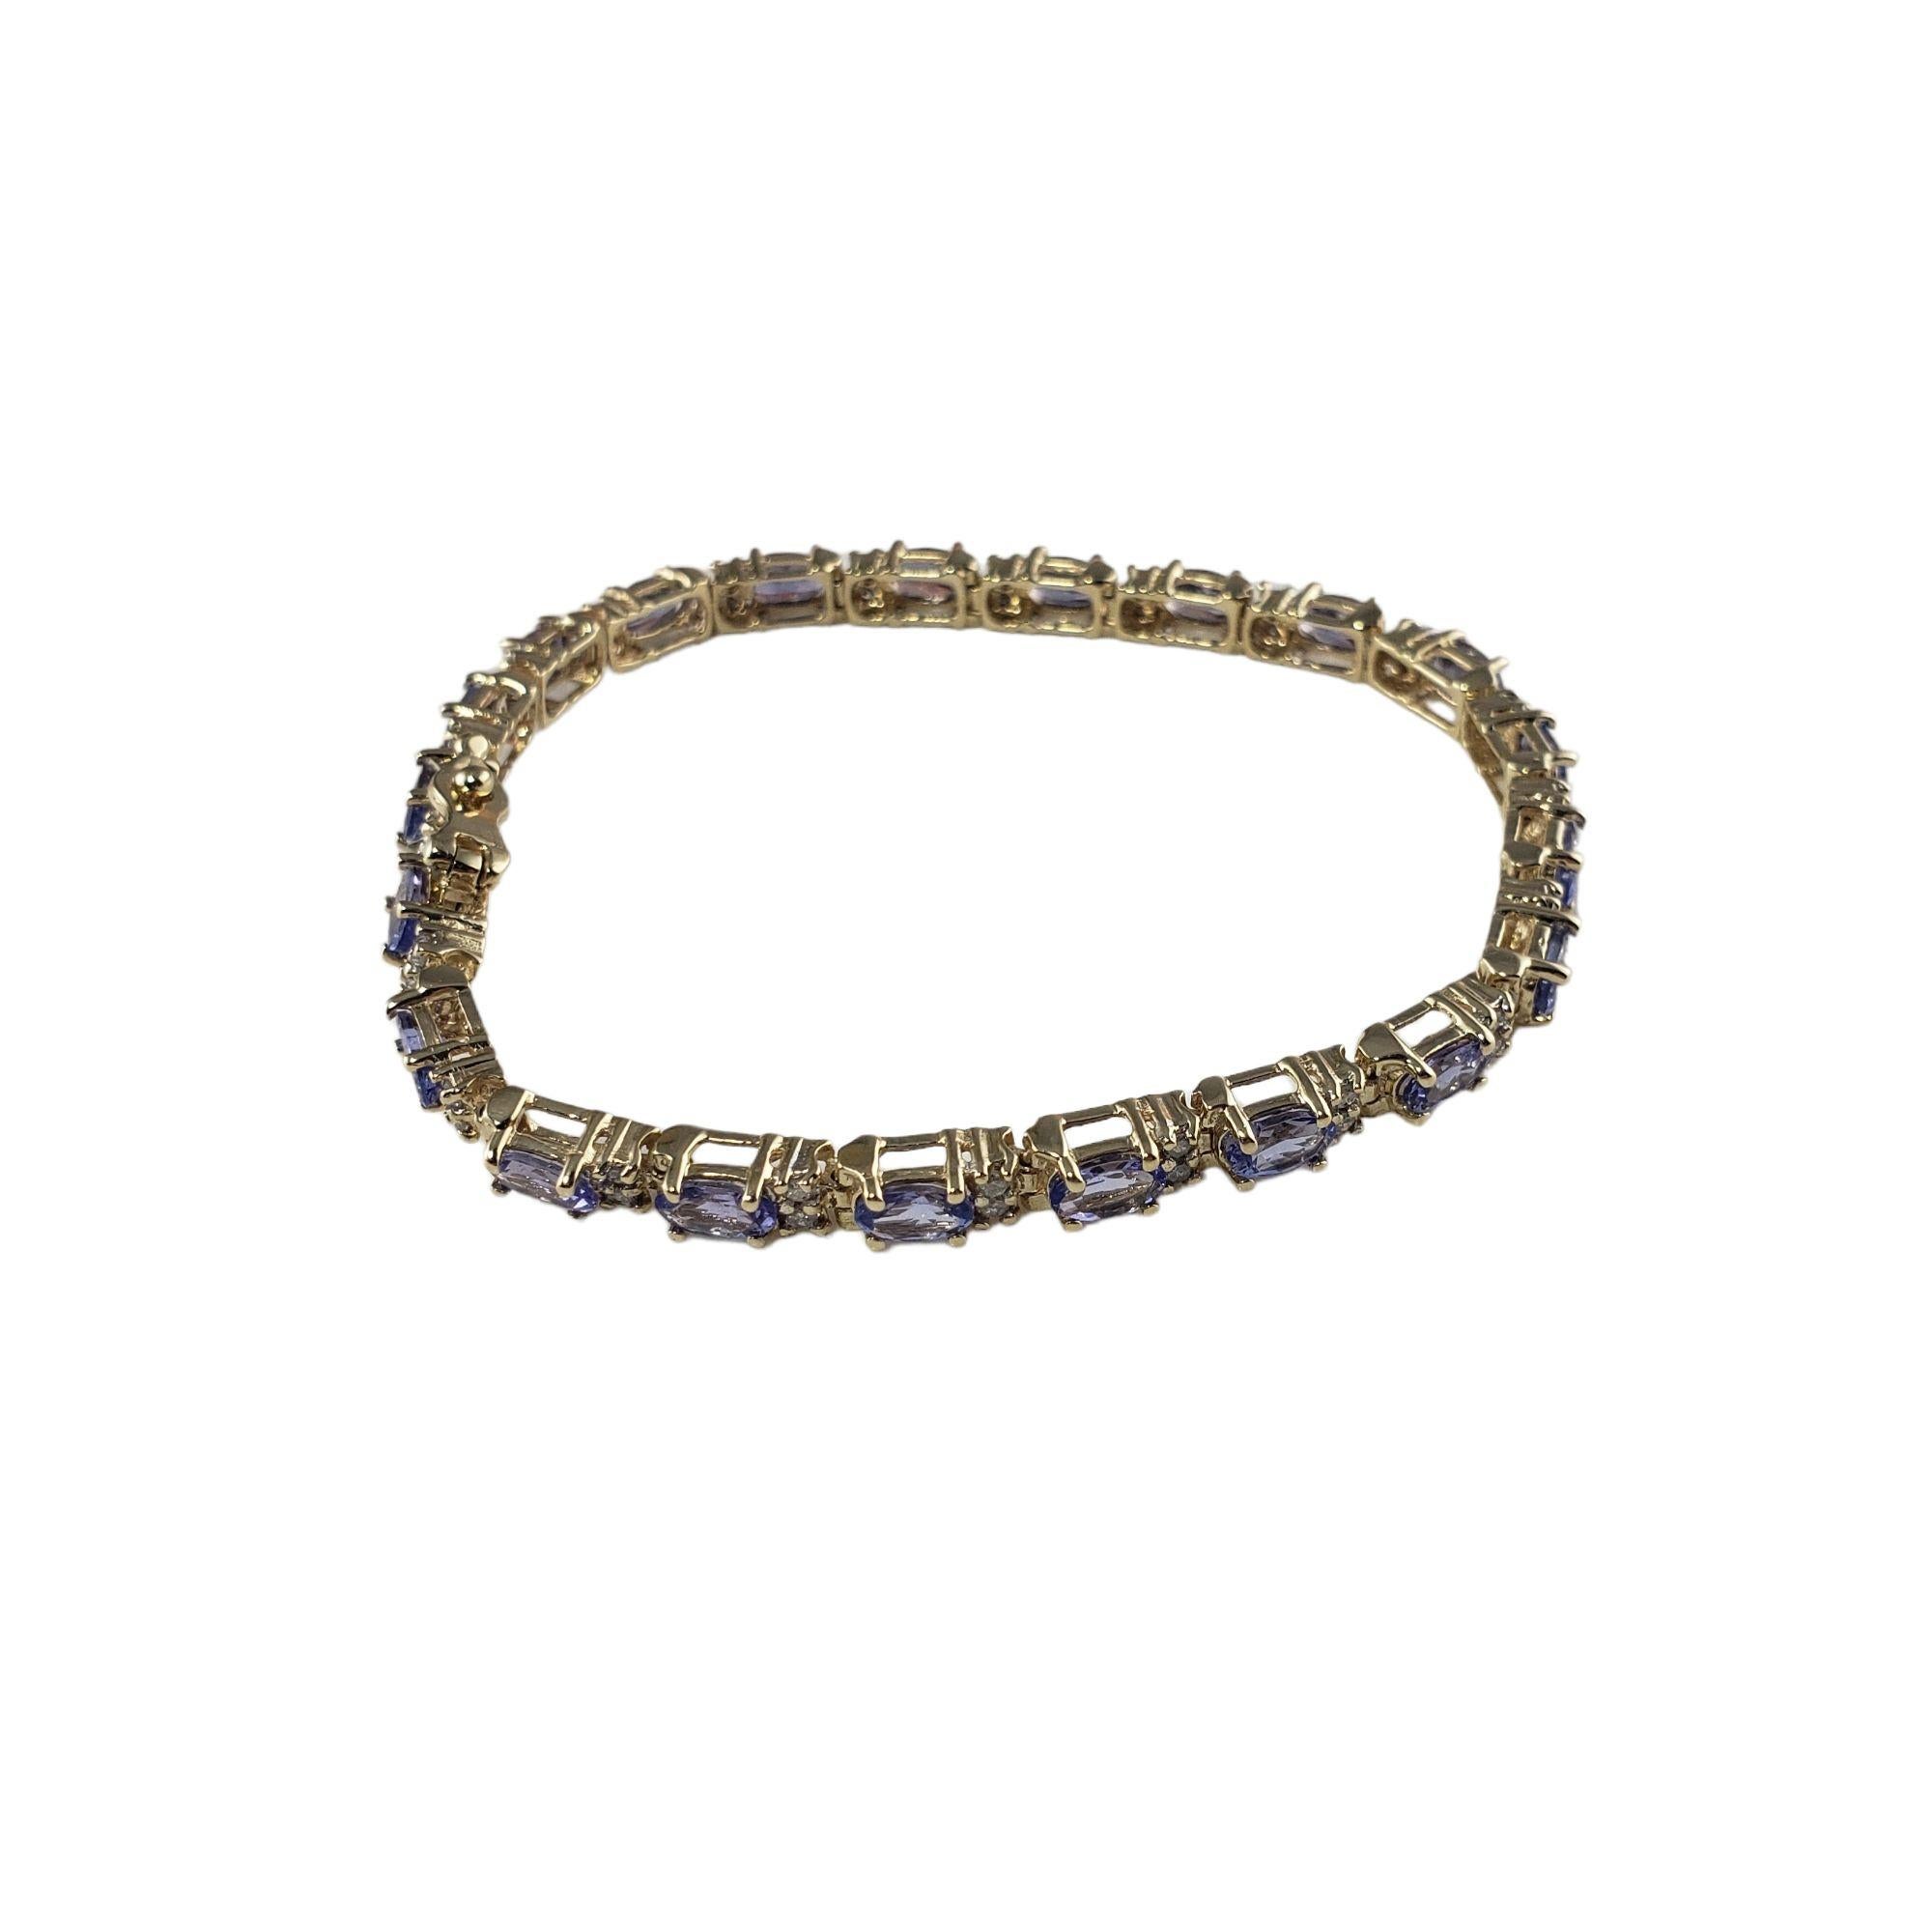 Vintage 14 Karat Yellow Gold Tanzanite and Diamond Bracelet JAGi Certified-

Ce magnifique bracelet comprend 21 tanzanites de taille ovale et 42 diamants de taille unique sertis dans de l'or jaune 14K classique. Largeur : 4 mm.

Poids total de la